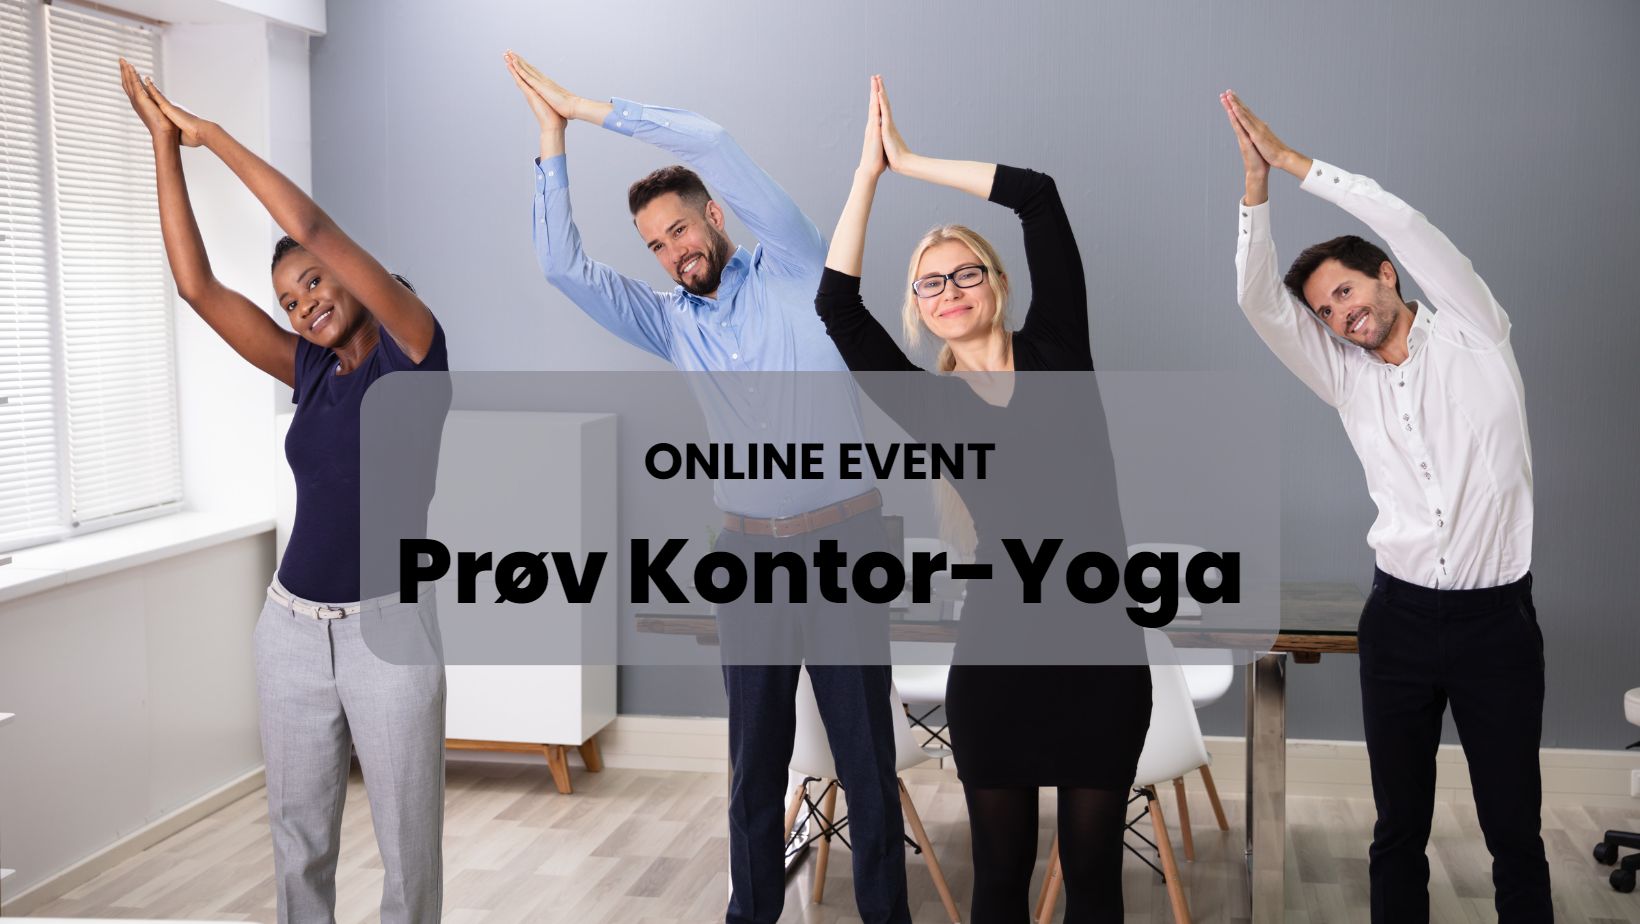 Online Kontor-Yoga event